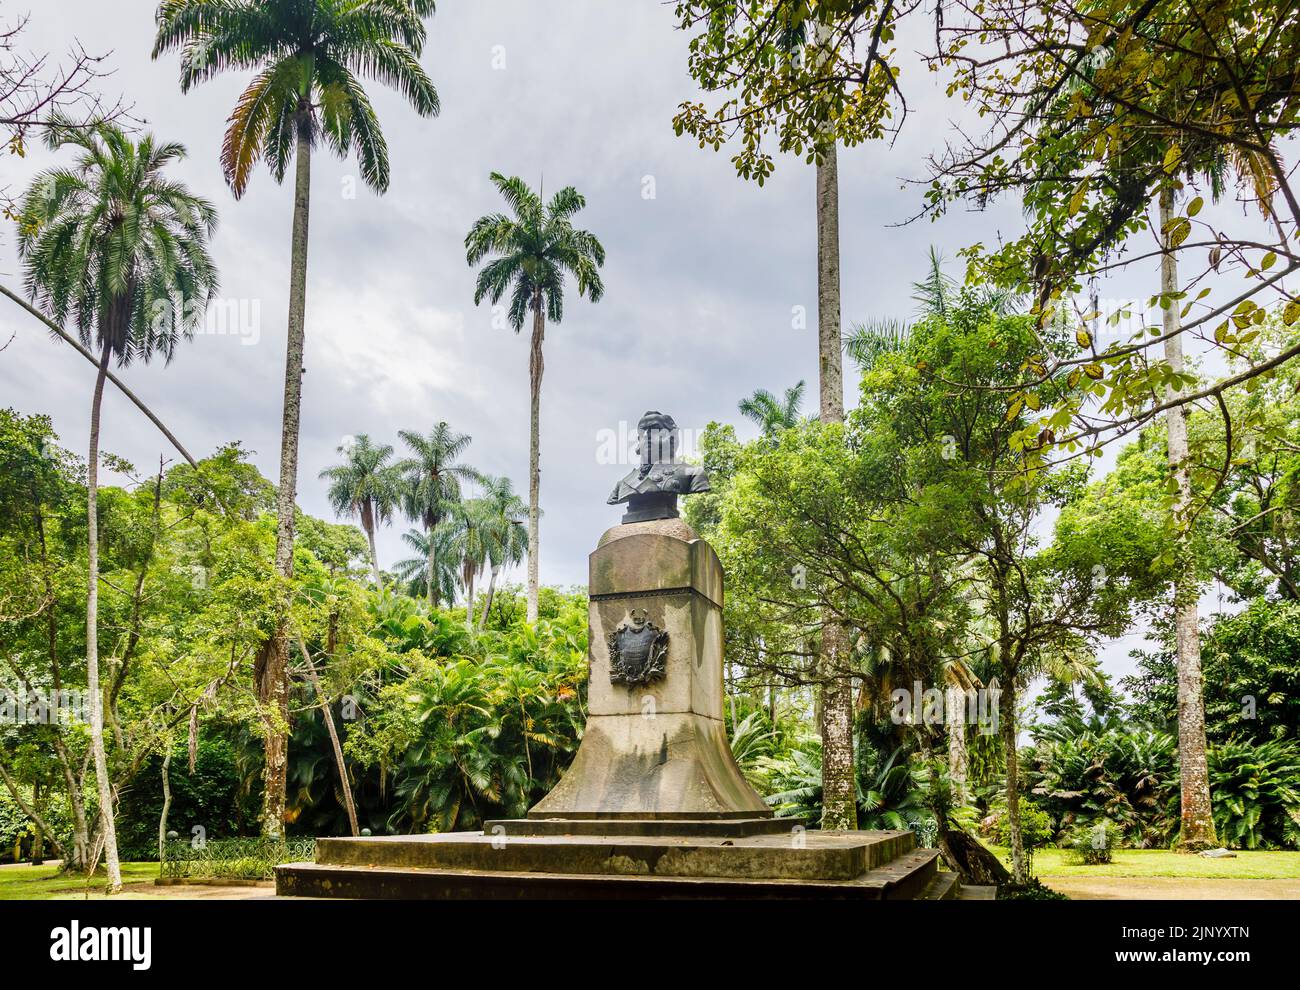 Busto y escudo de armas de D Joao VI, fundador del Jardín Botánico (Jardín Botánico), Zona Sur, Río de Janeiro, Brasil, entre palmeras tropicales Foto de stock